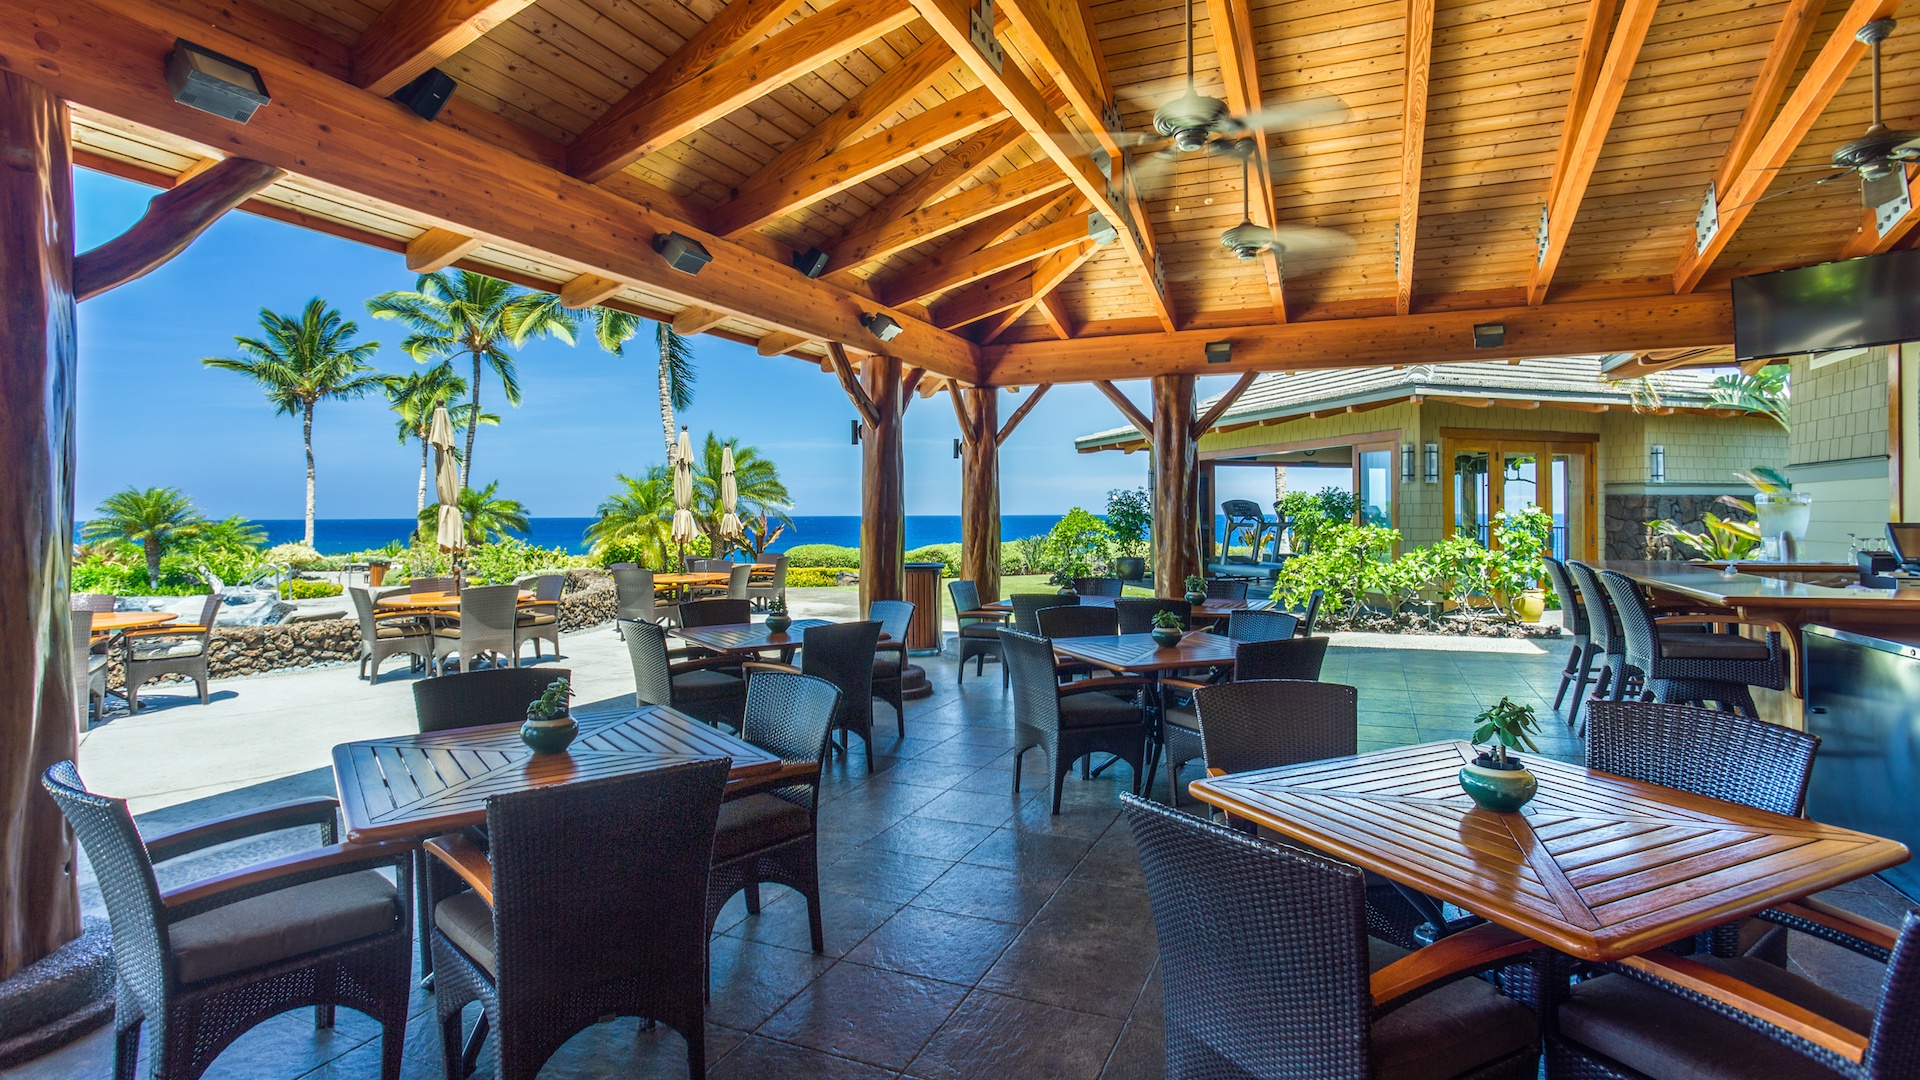 Waikoloa Vacation Rentals, 3BD Hali'i Kai (12G) at Waikoloa Resort - More seating options and views at Hali'i Kai Resort's private Ocean Club Bar & Grille